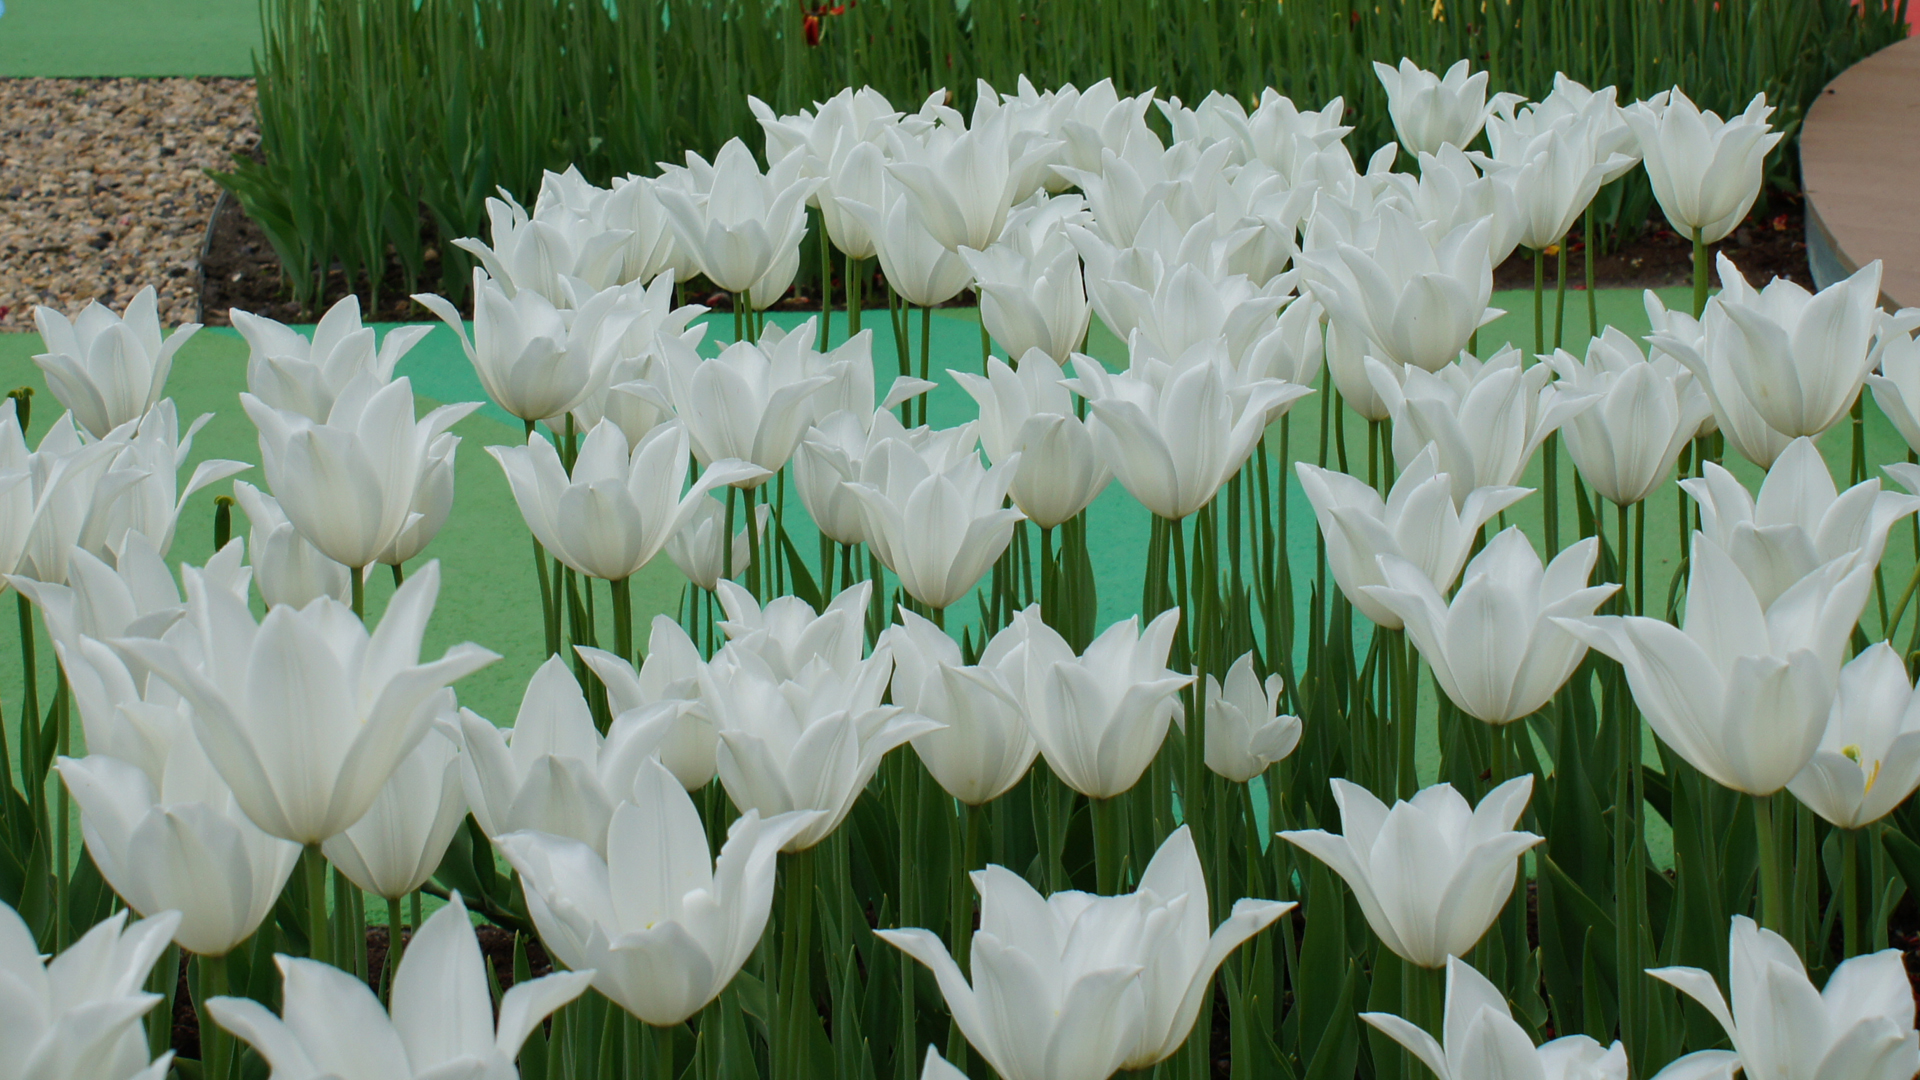 Fotostrecke Frühling Abbildung 12: Weiße Tulpen